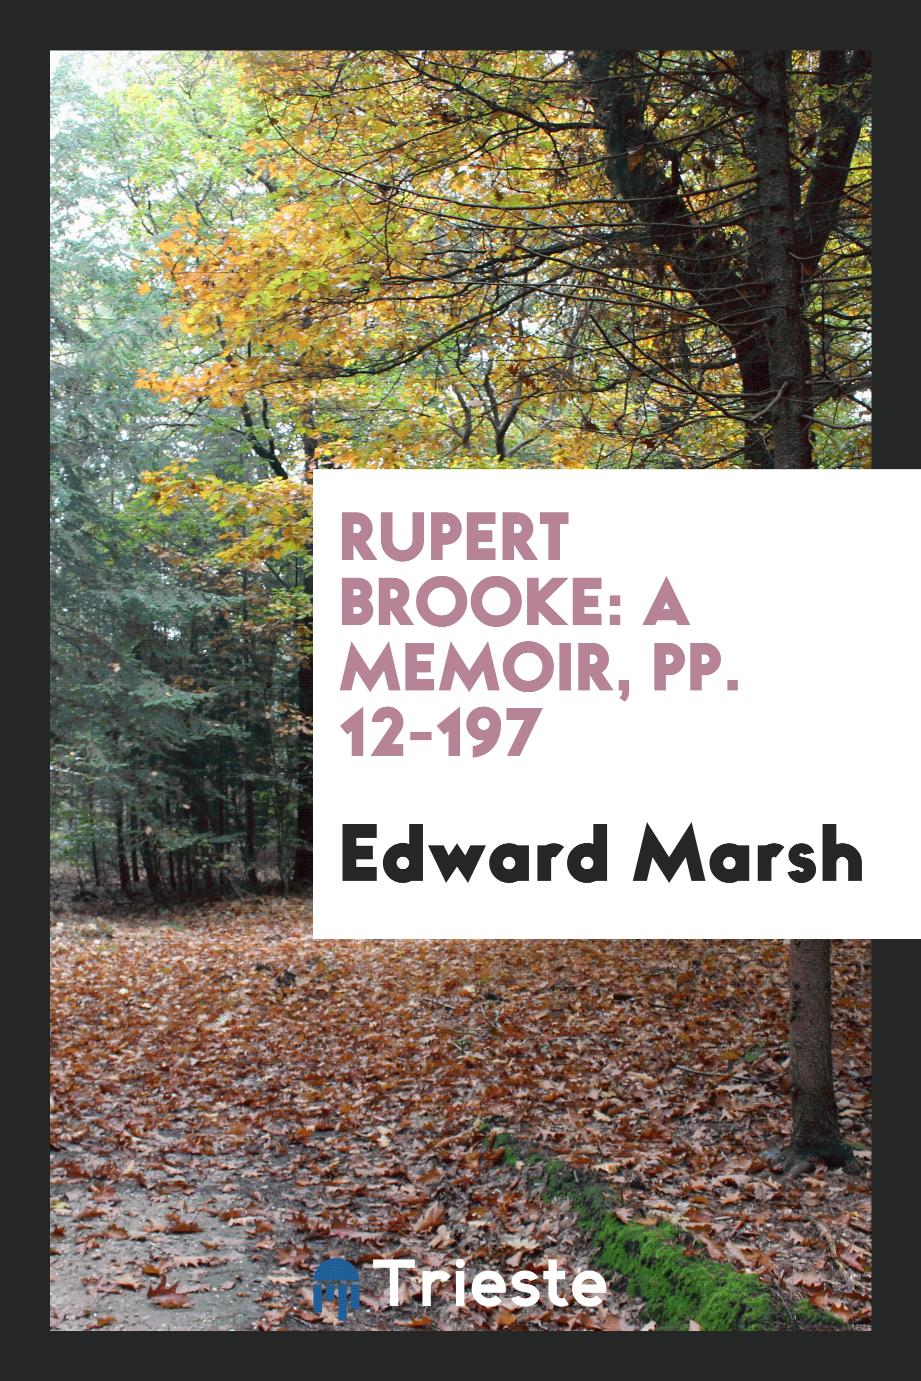 Rupert Brooke: A Memoir, pp. 12-197